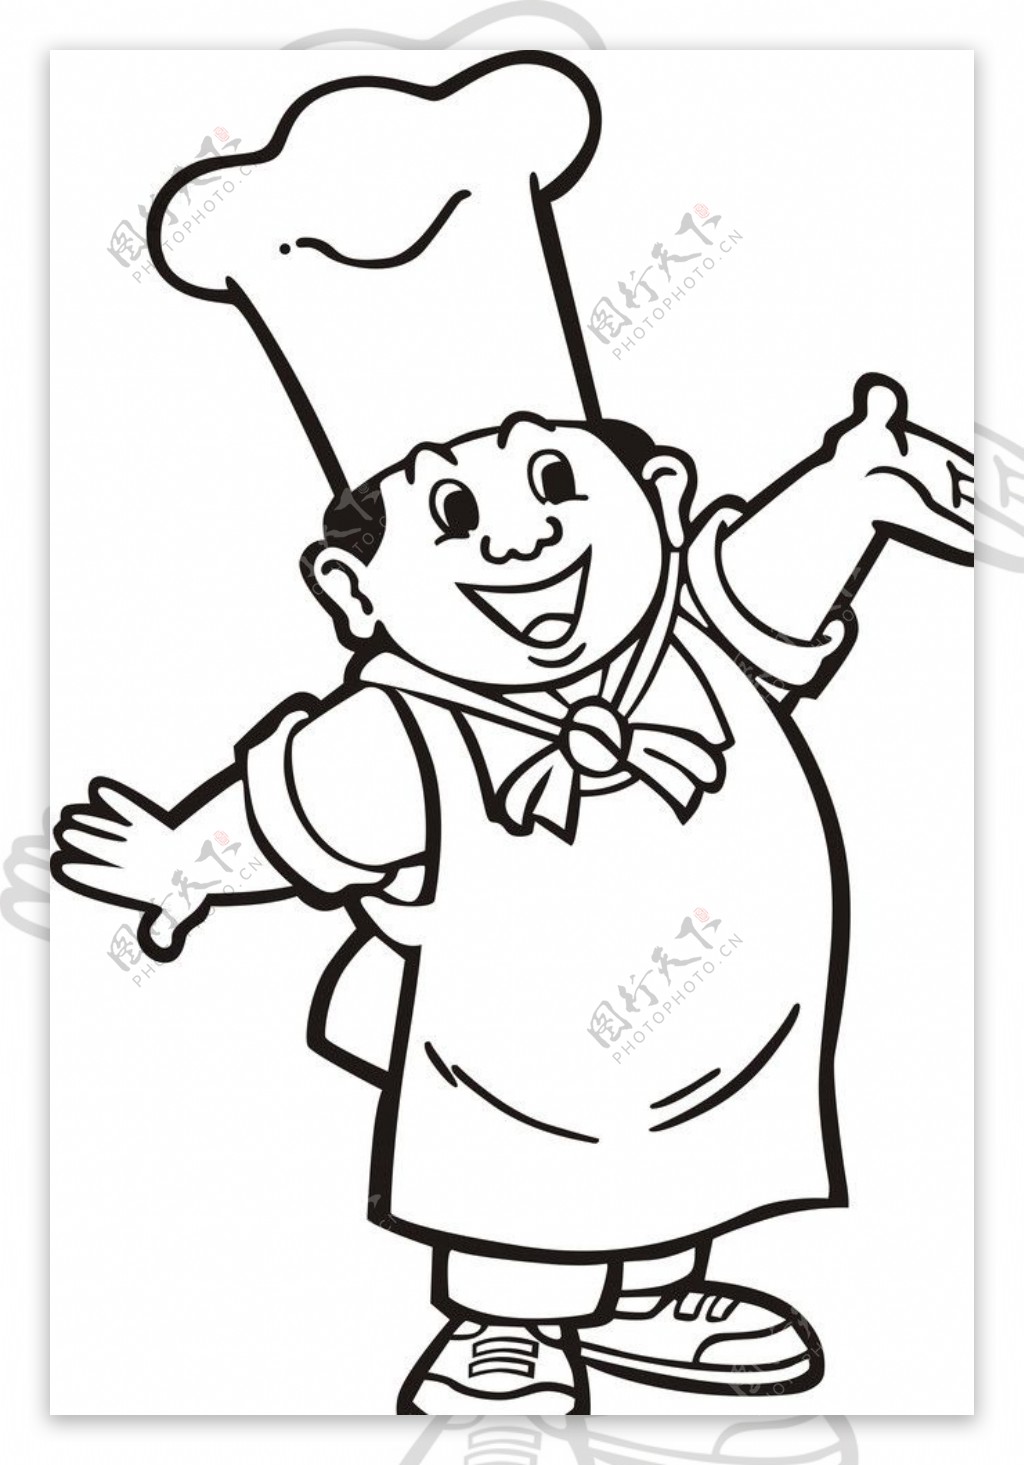 卡通厨师图片